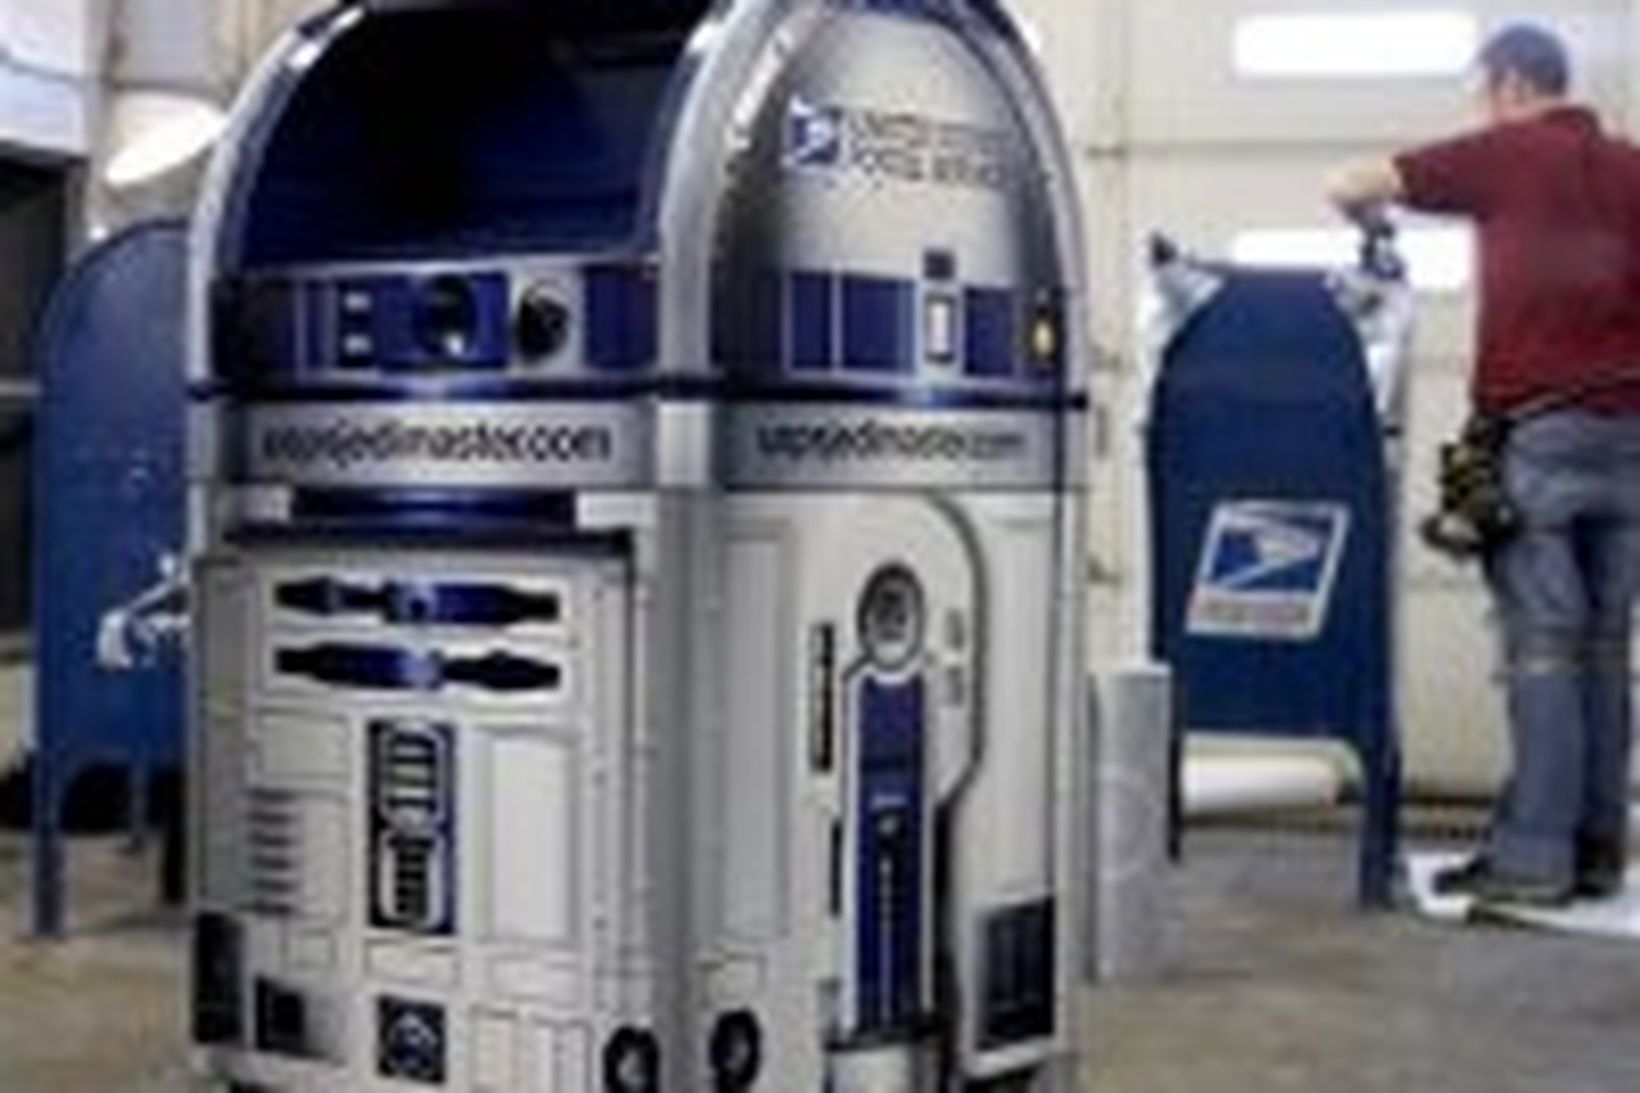 R2-D2 hefur fengið nýtt hlutverk sem póstkassi.